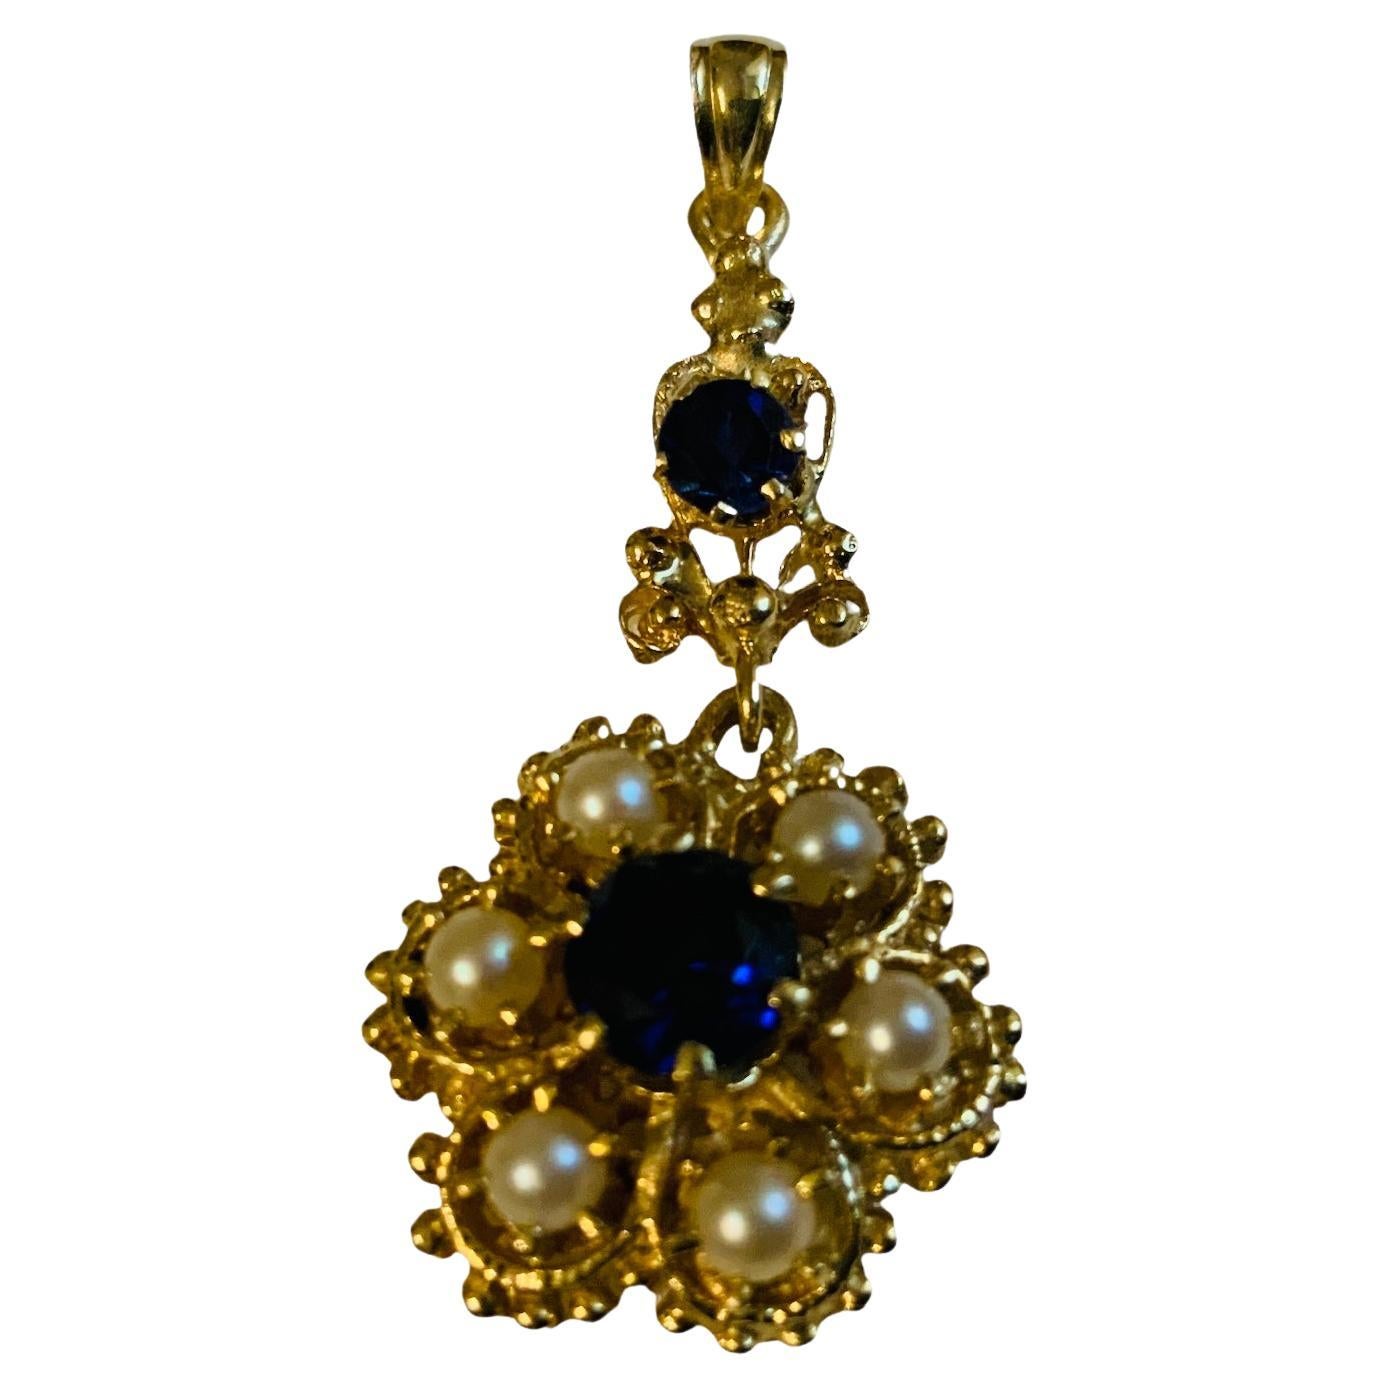 Il s'agit d'un pendentif en or 14K composé de perles et de topazes bleues foncées. Il représente un pendentif fleur en or orné de six perles en serti clos et d'une topaze bleu foncé également en serti clos au centre. Une autre topaze bleu foncé plus